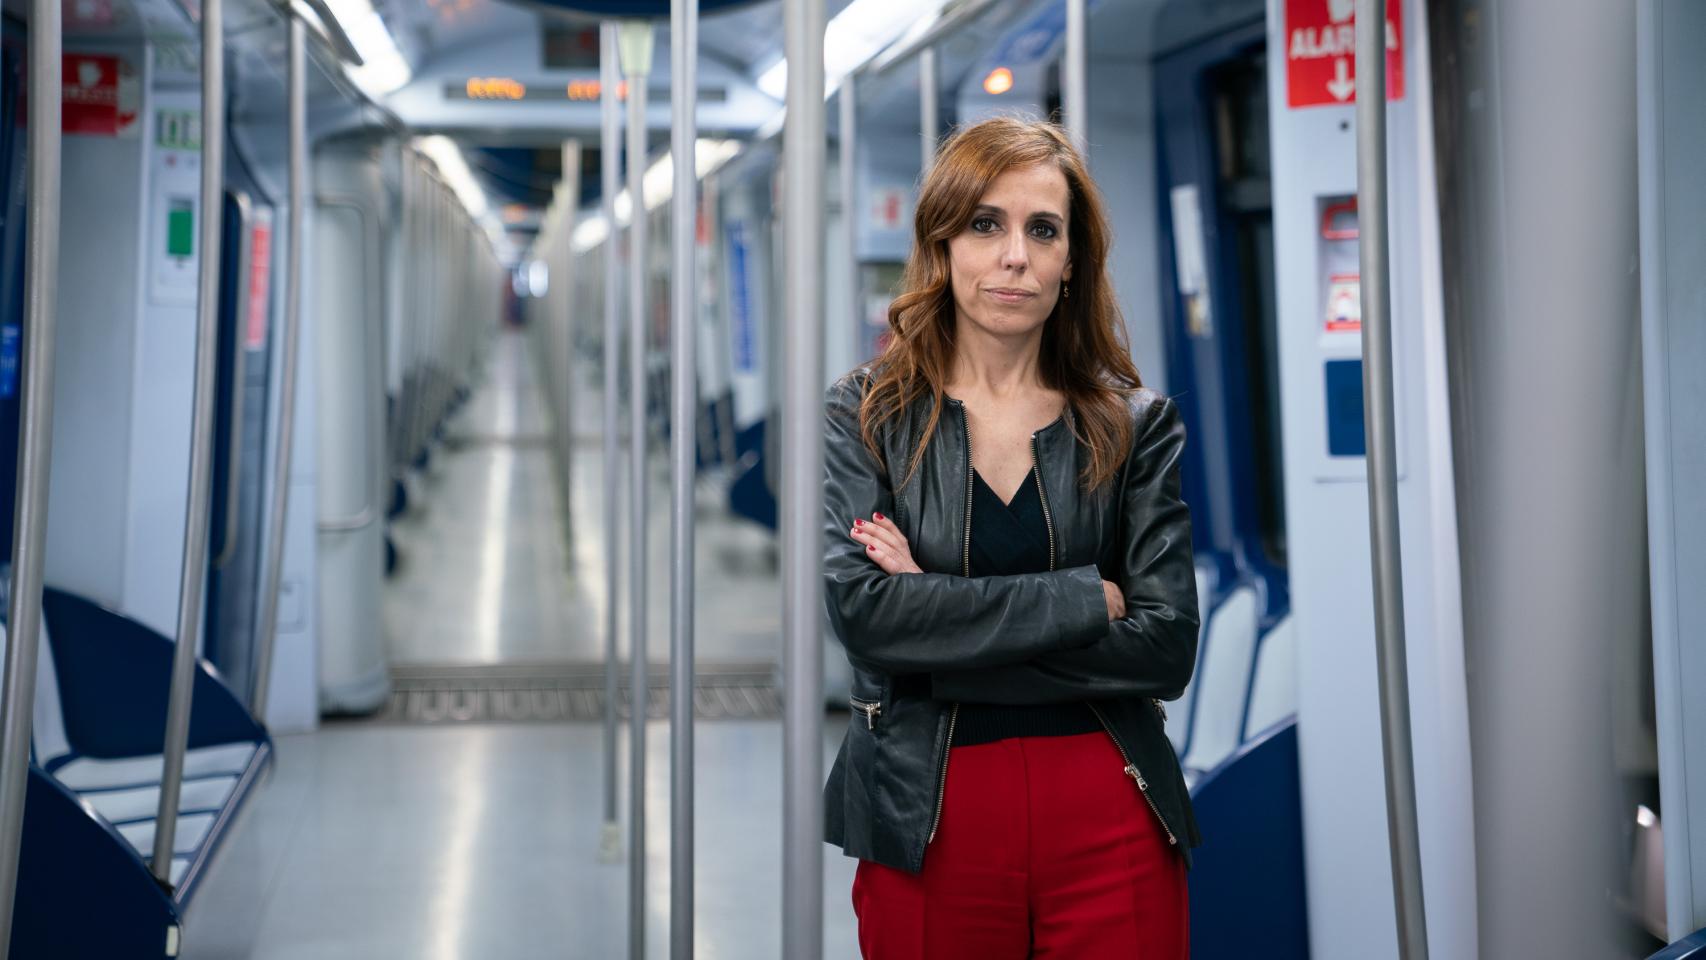 Silvia Roldán en un tren vacío de Metro de Madrid. *Se encontraba sin mascarilla porque se encontraba en el Depósito 4 de Metro, vacío y listo para la desinfección.